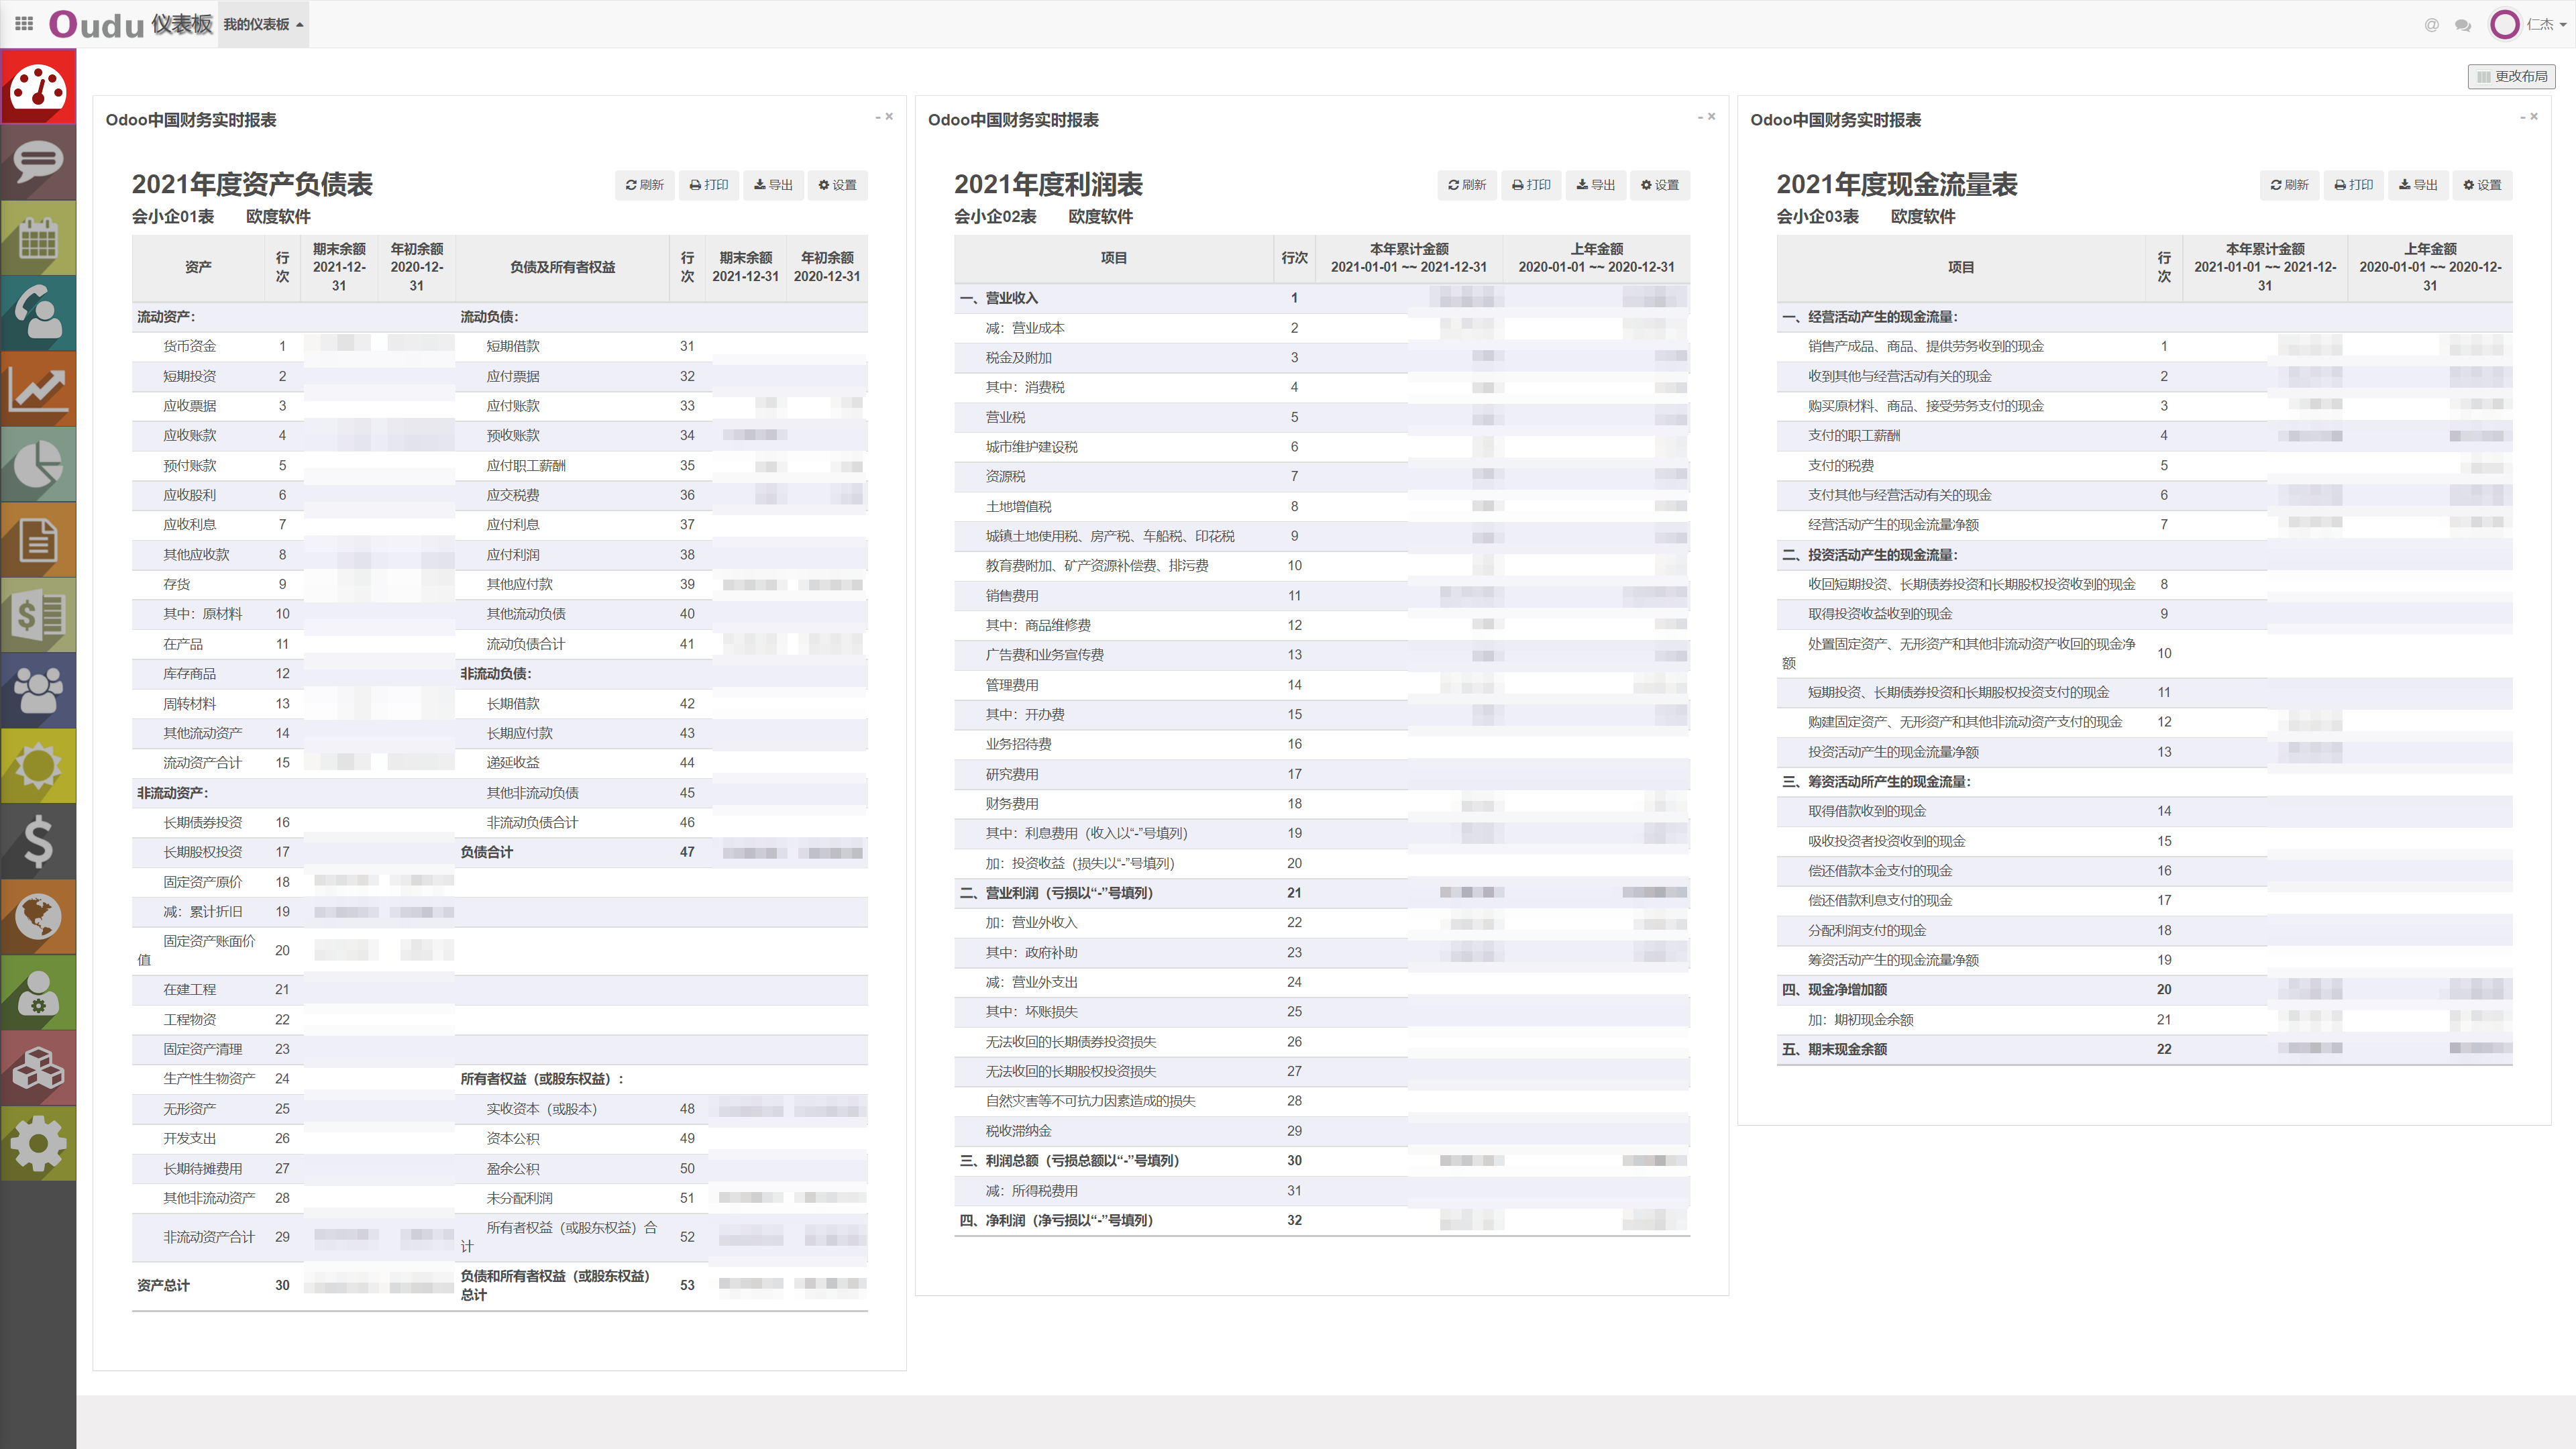 odoo社区版中国本地化会计财务三大报表一体化